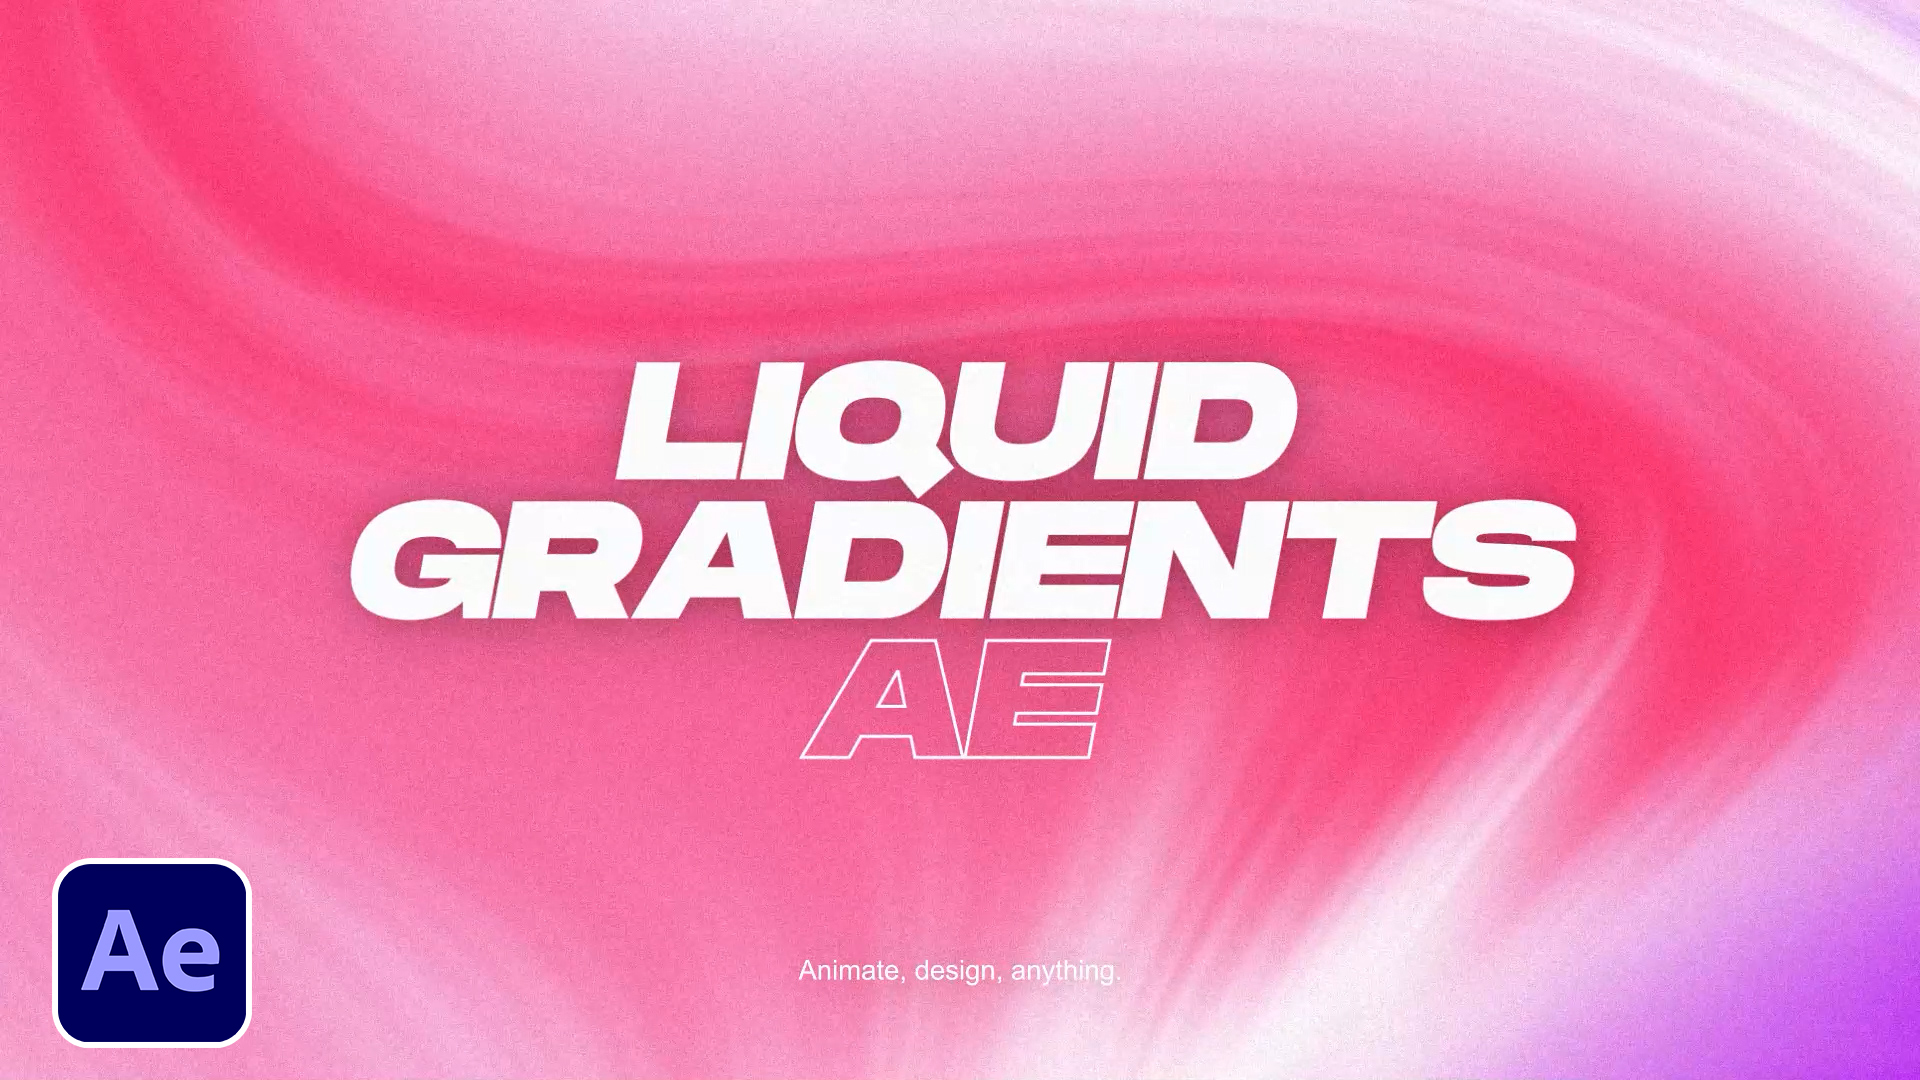 Top 3 Liquid Gradient Backgrounds in After Effects – SonduckFilm